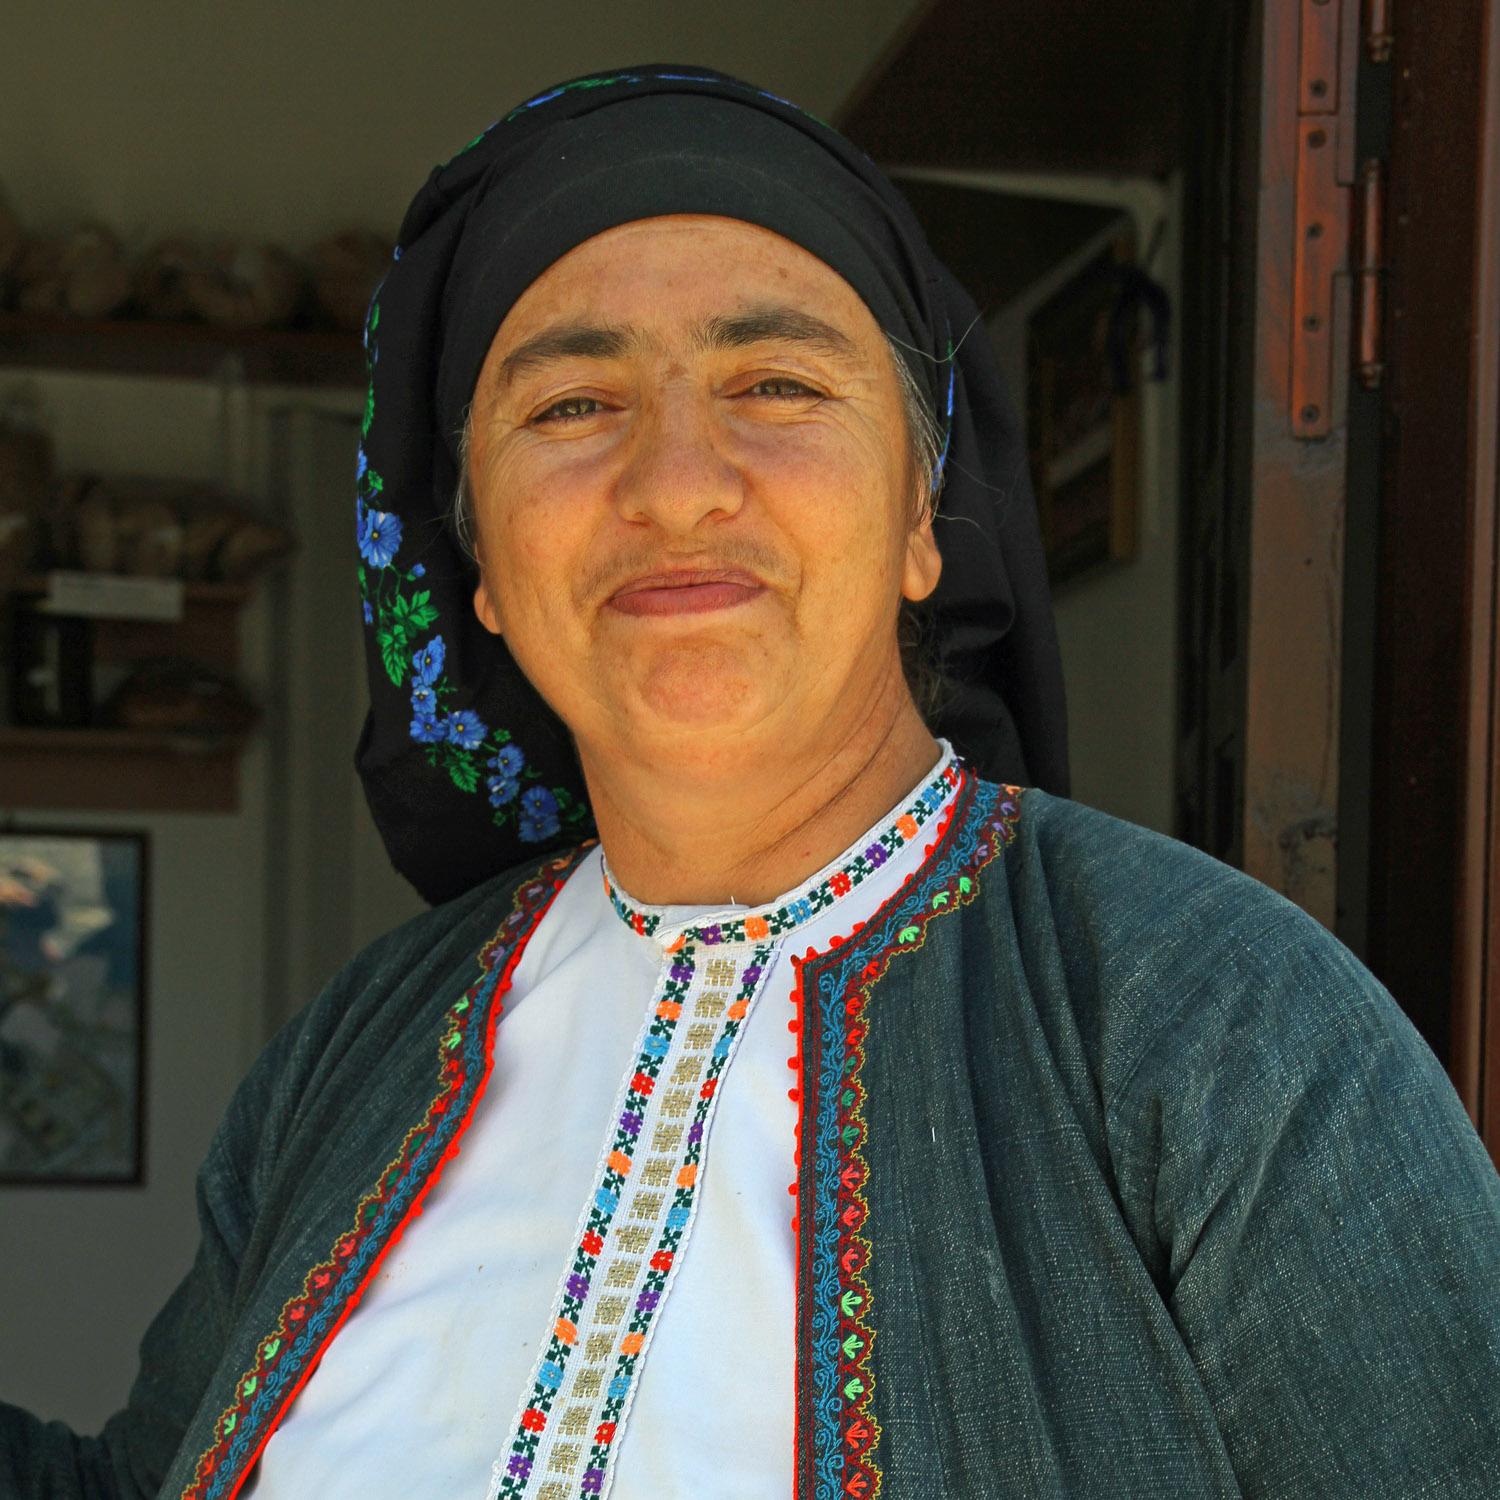 Kalliópi ist eine der letzten semiprofessionellen Bäckerinnen in Ólympos